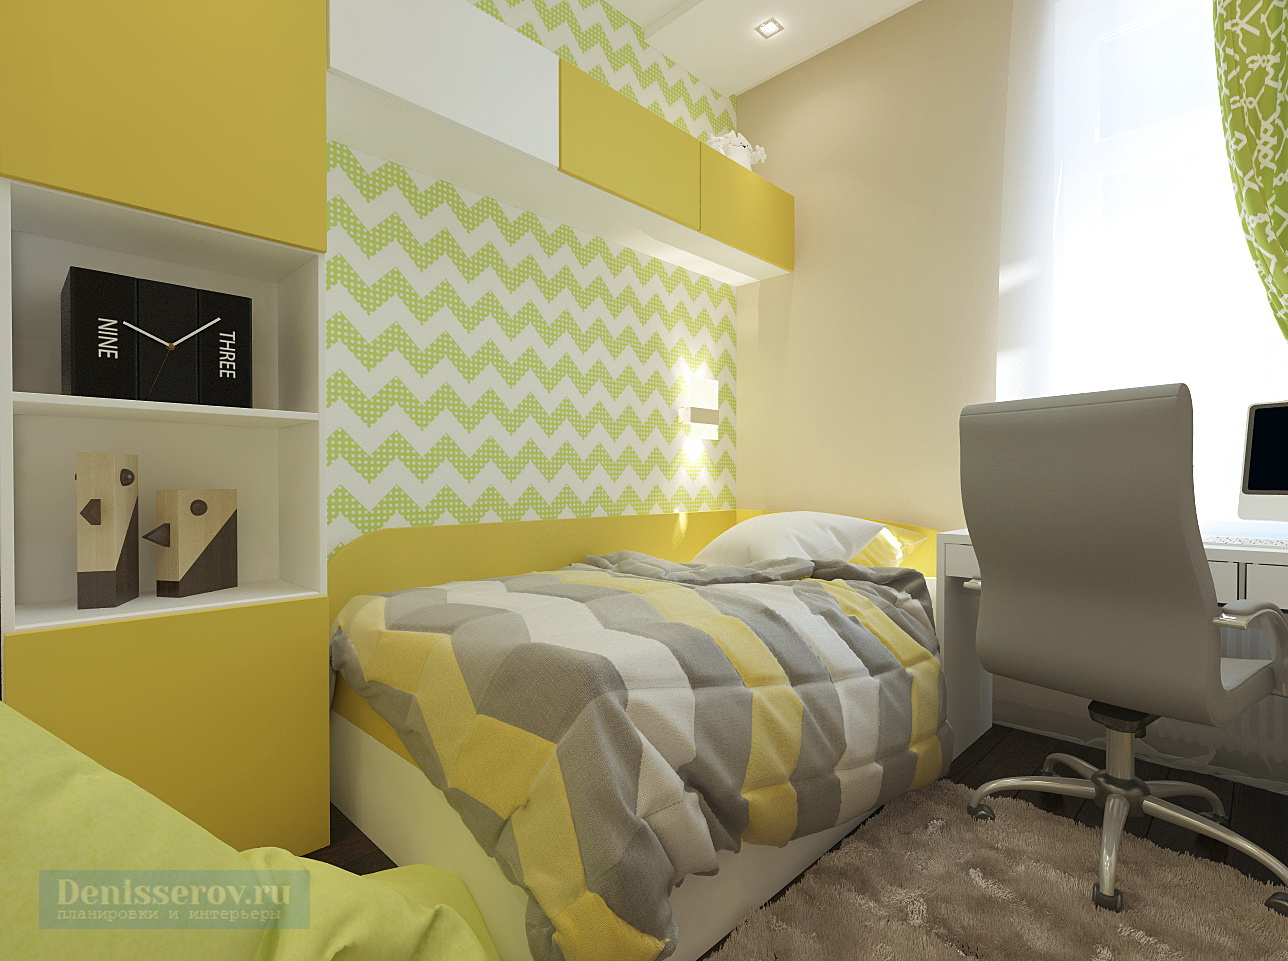 Дизайн детской комнаты 10 кв. м в желтом цвете для мальчика